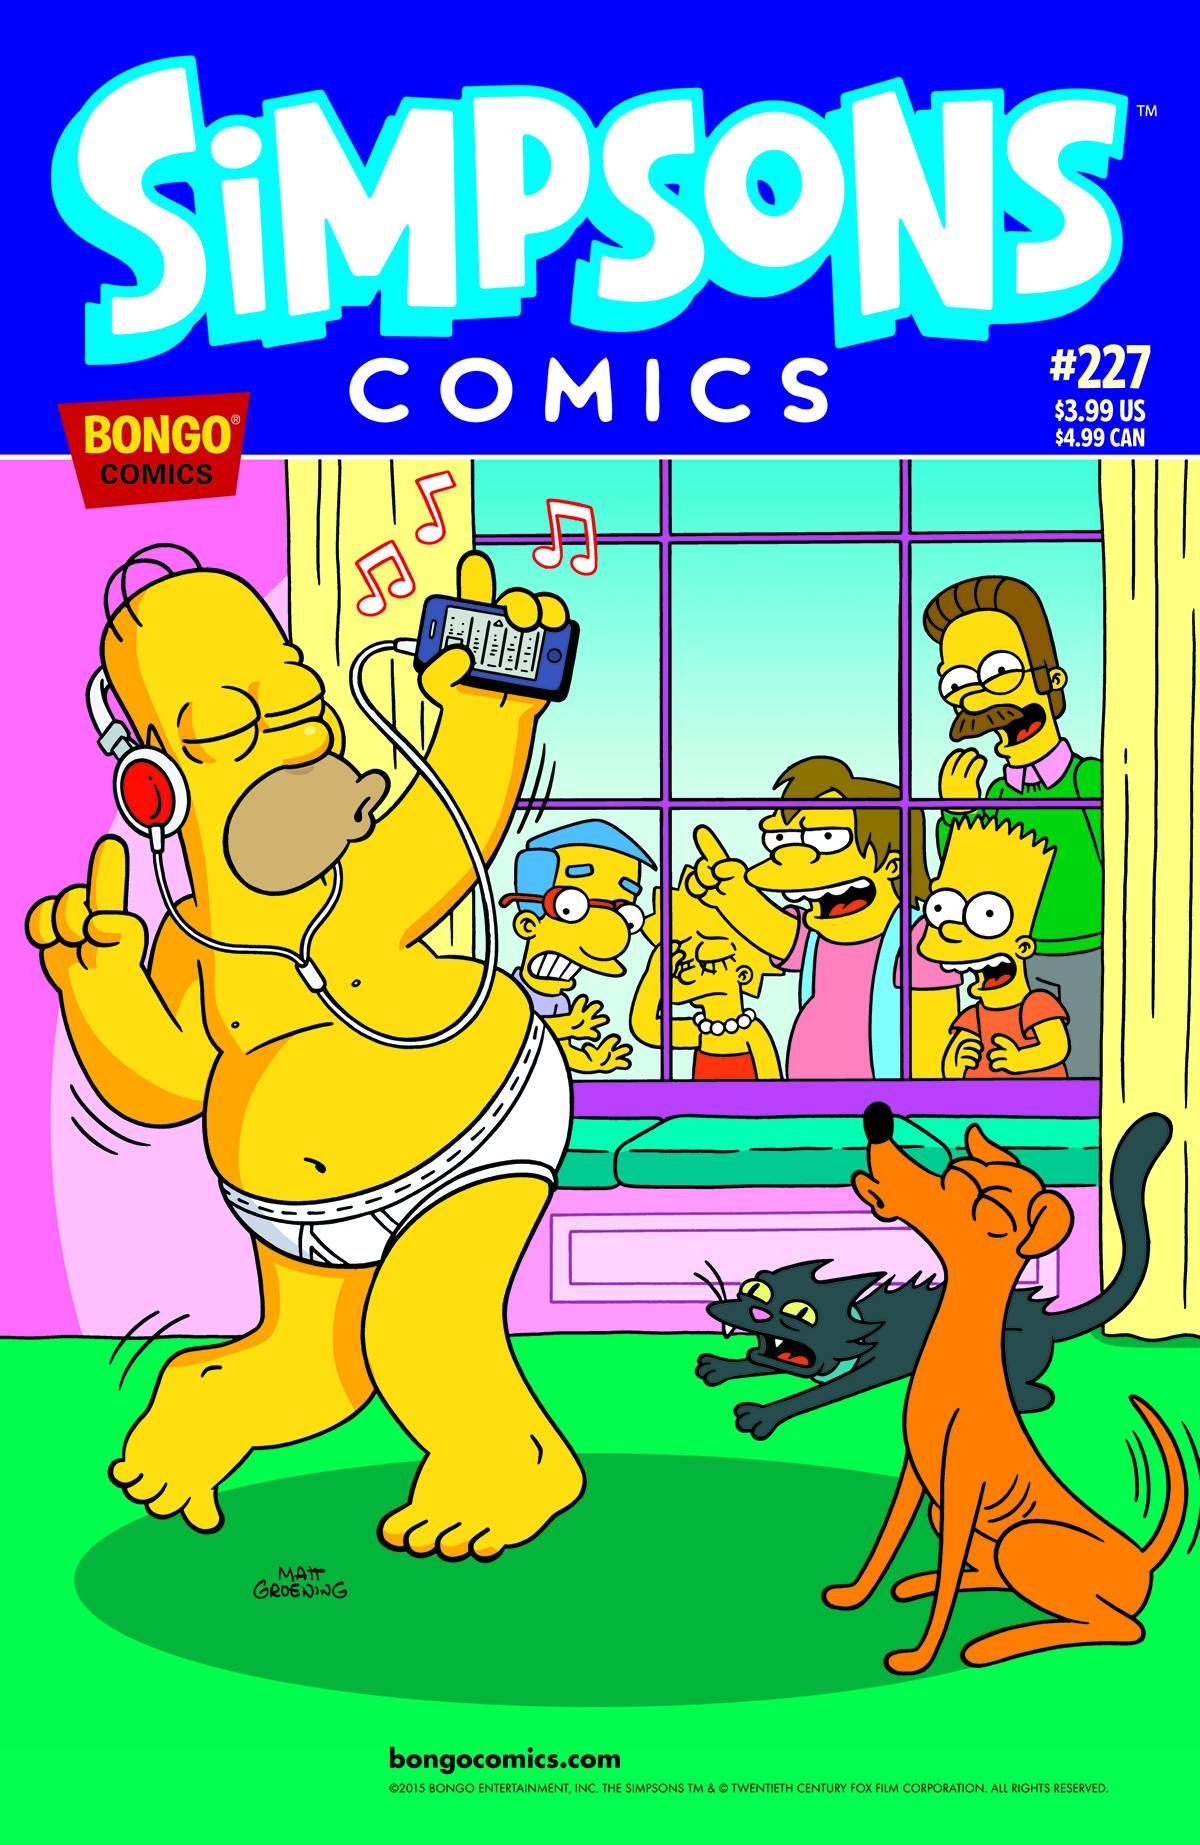 Simpsons Comics #227 Comic